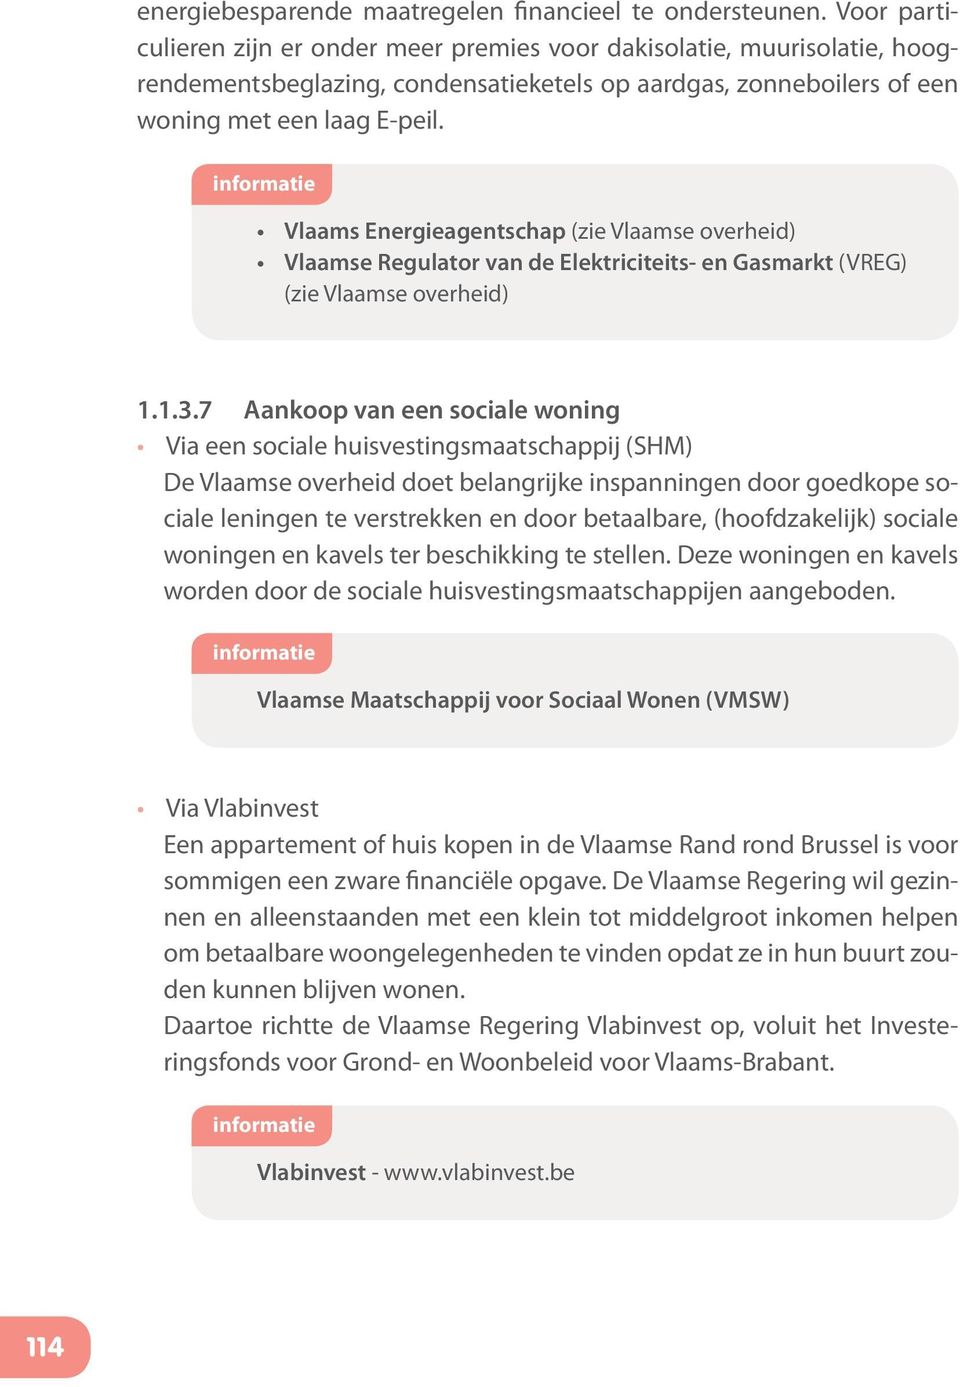 Vlaams Energieagentschap (zie Vlaamse overheid) Vlaamse Regulator van de Elektriciteits- en Gasmarkt (VREG) (zie Vlaamse overheid) 1.1.3.